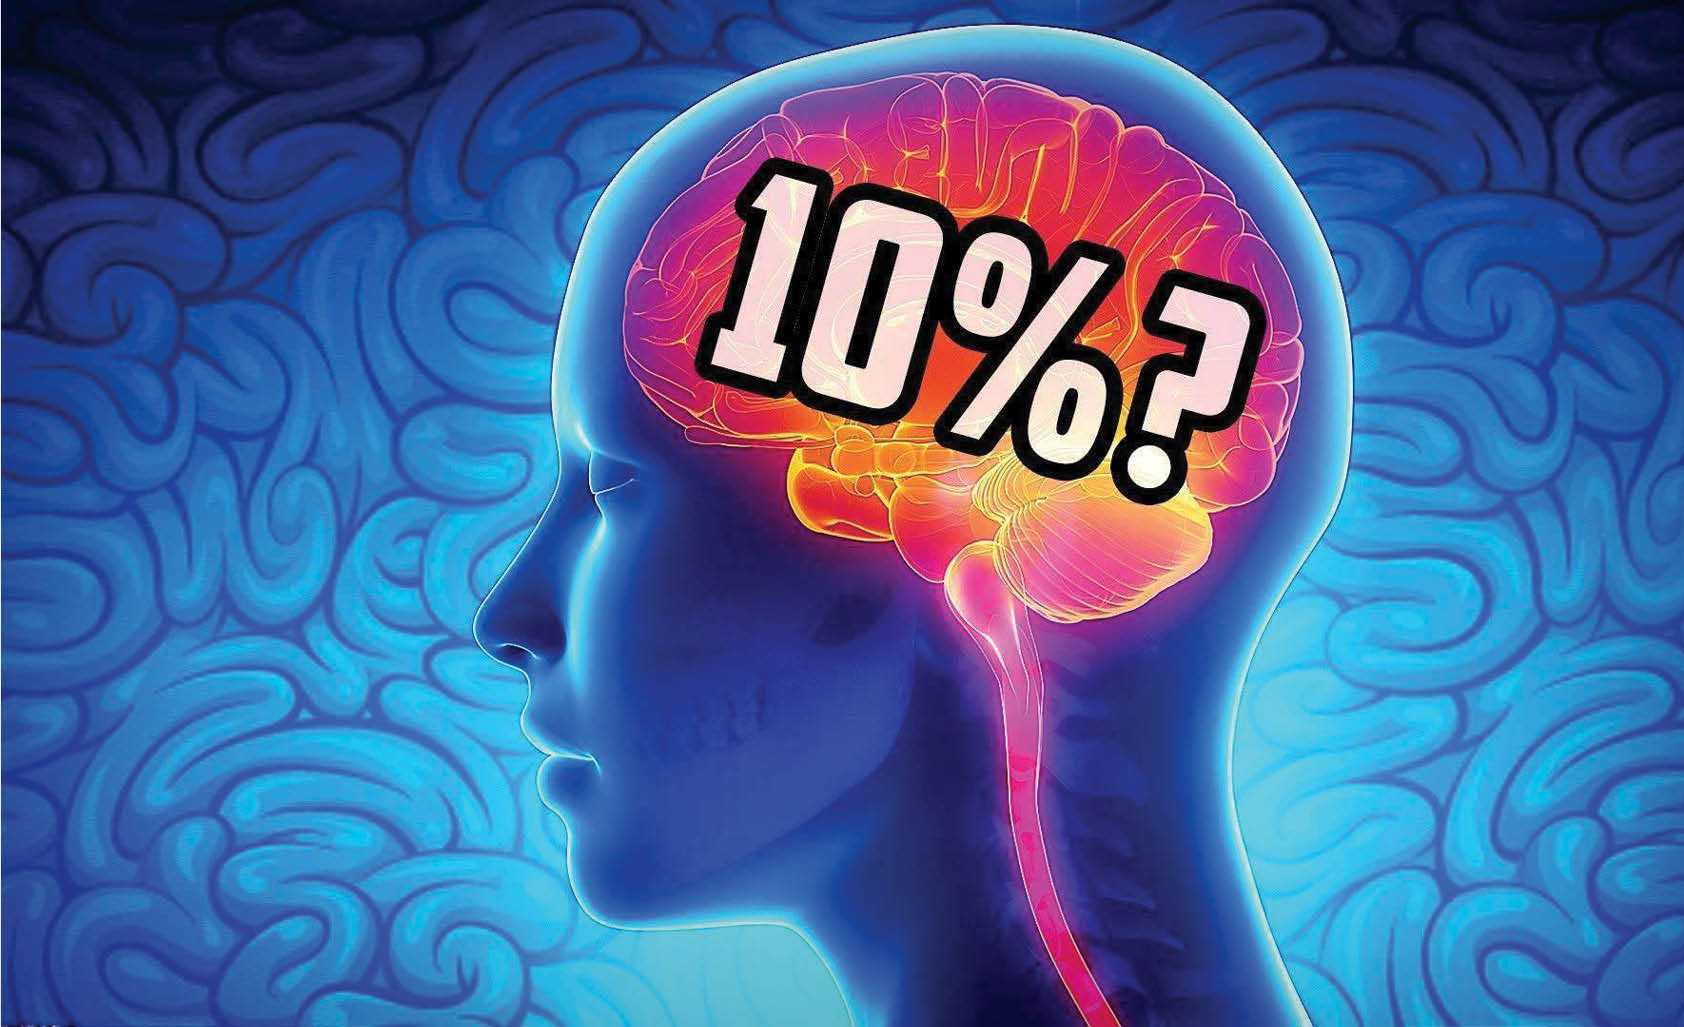 استفاده 10درصدی از مغز؛ این موضوع شایعه است یا واقعیت دارد؟